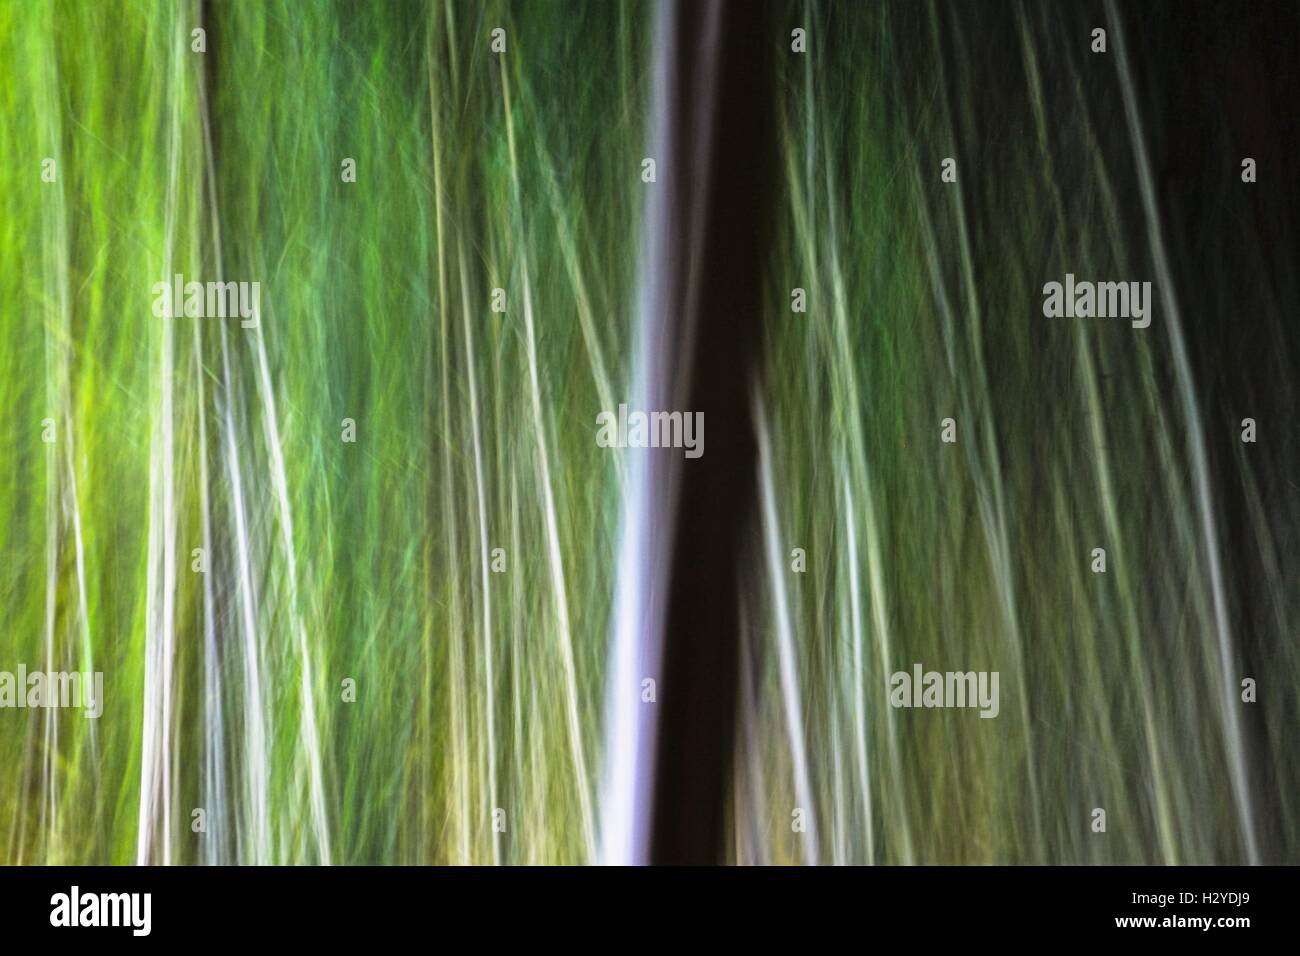 Abstrakte Bambusbäume. Horizontale 3:2 Format. Stockfoto